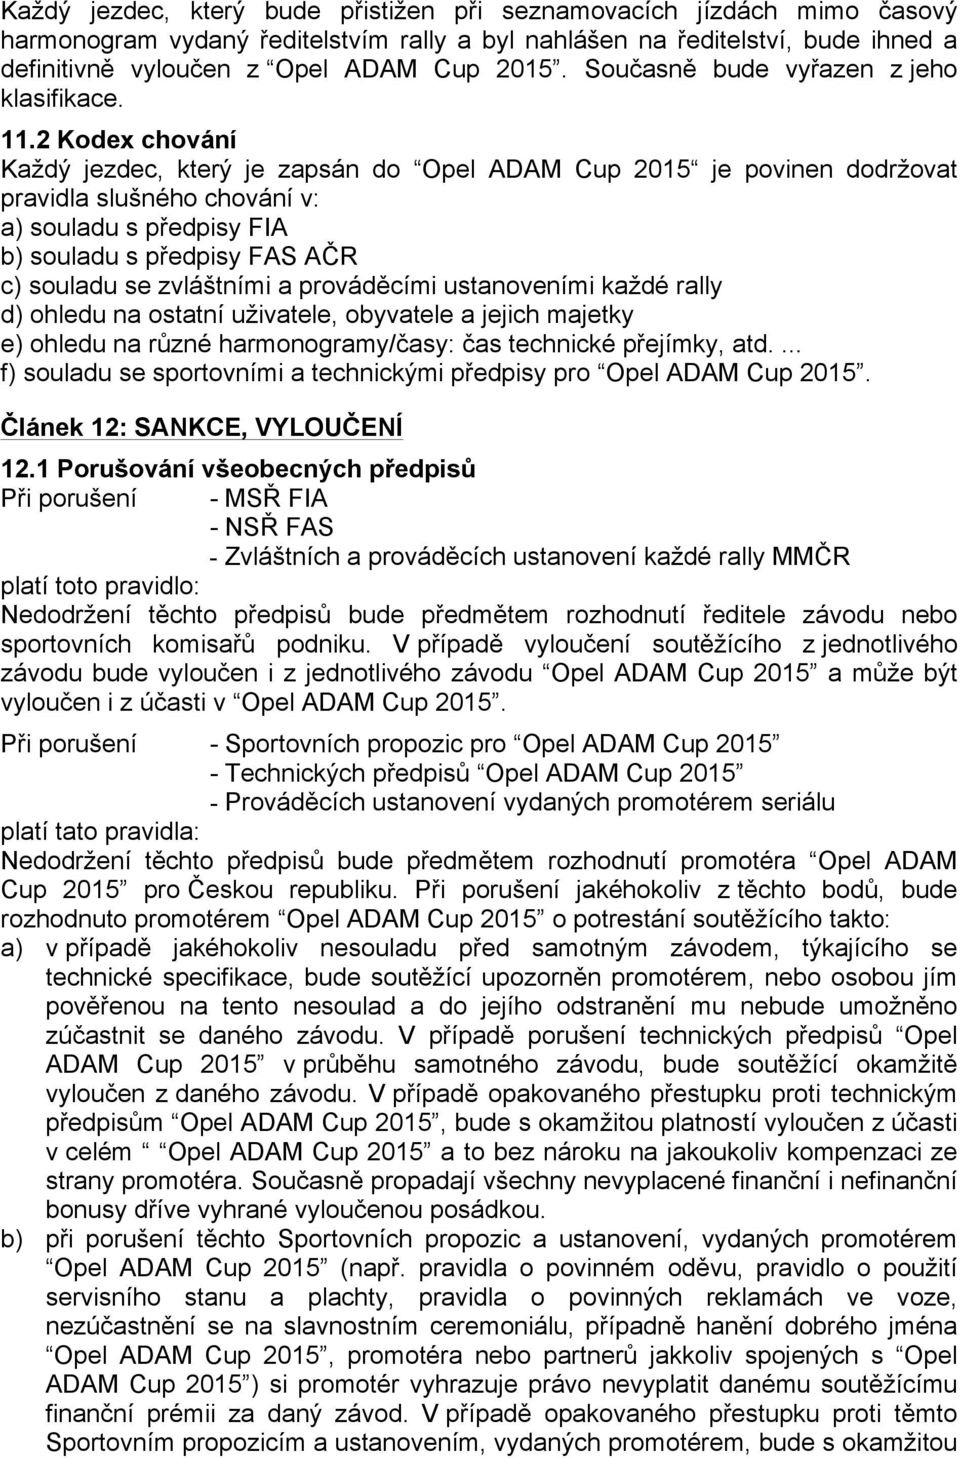 2 Kodex chování Každý jezdec, který je zapsán do Opel ADAM Cup 2015 je povinen dodržovat pravidla slušného chování v: a) souladu s předpisy FIA b) souladu s předpisy FAS AČR c) souladu se zvláštními